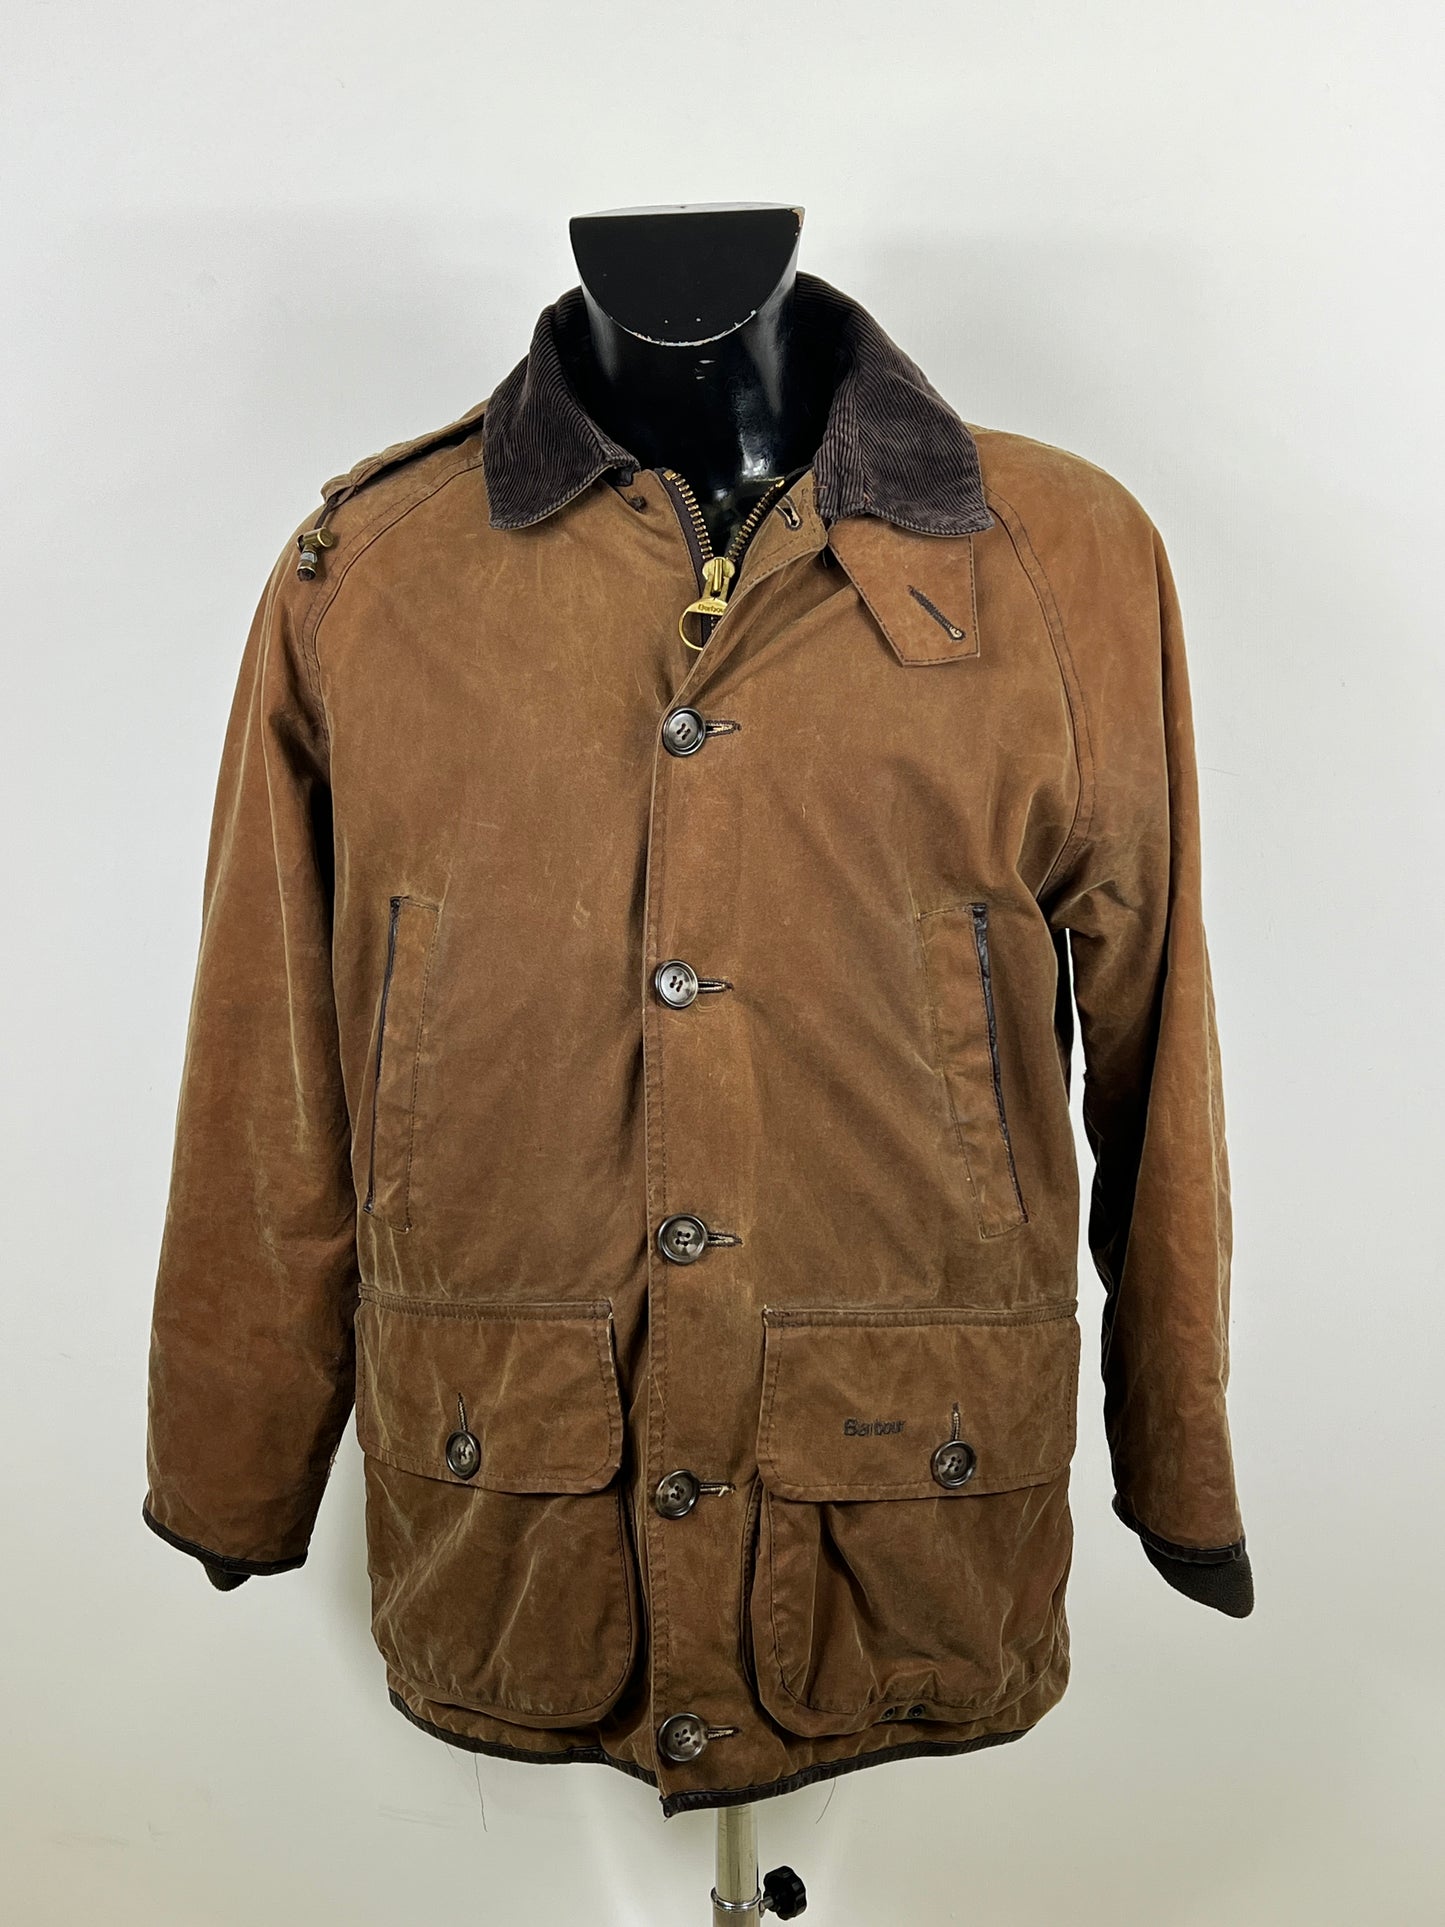 RARA Barbour Giacca Uomo Beauchamp C38/97 cm Small- Beige Waxed Beauchamp coat